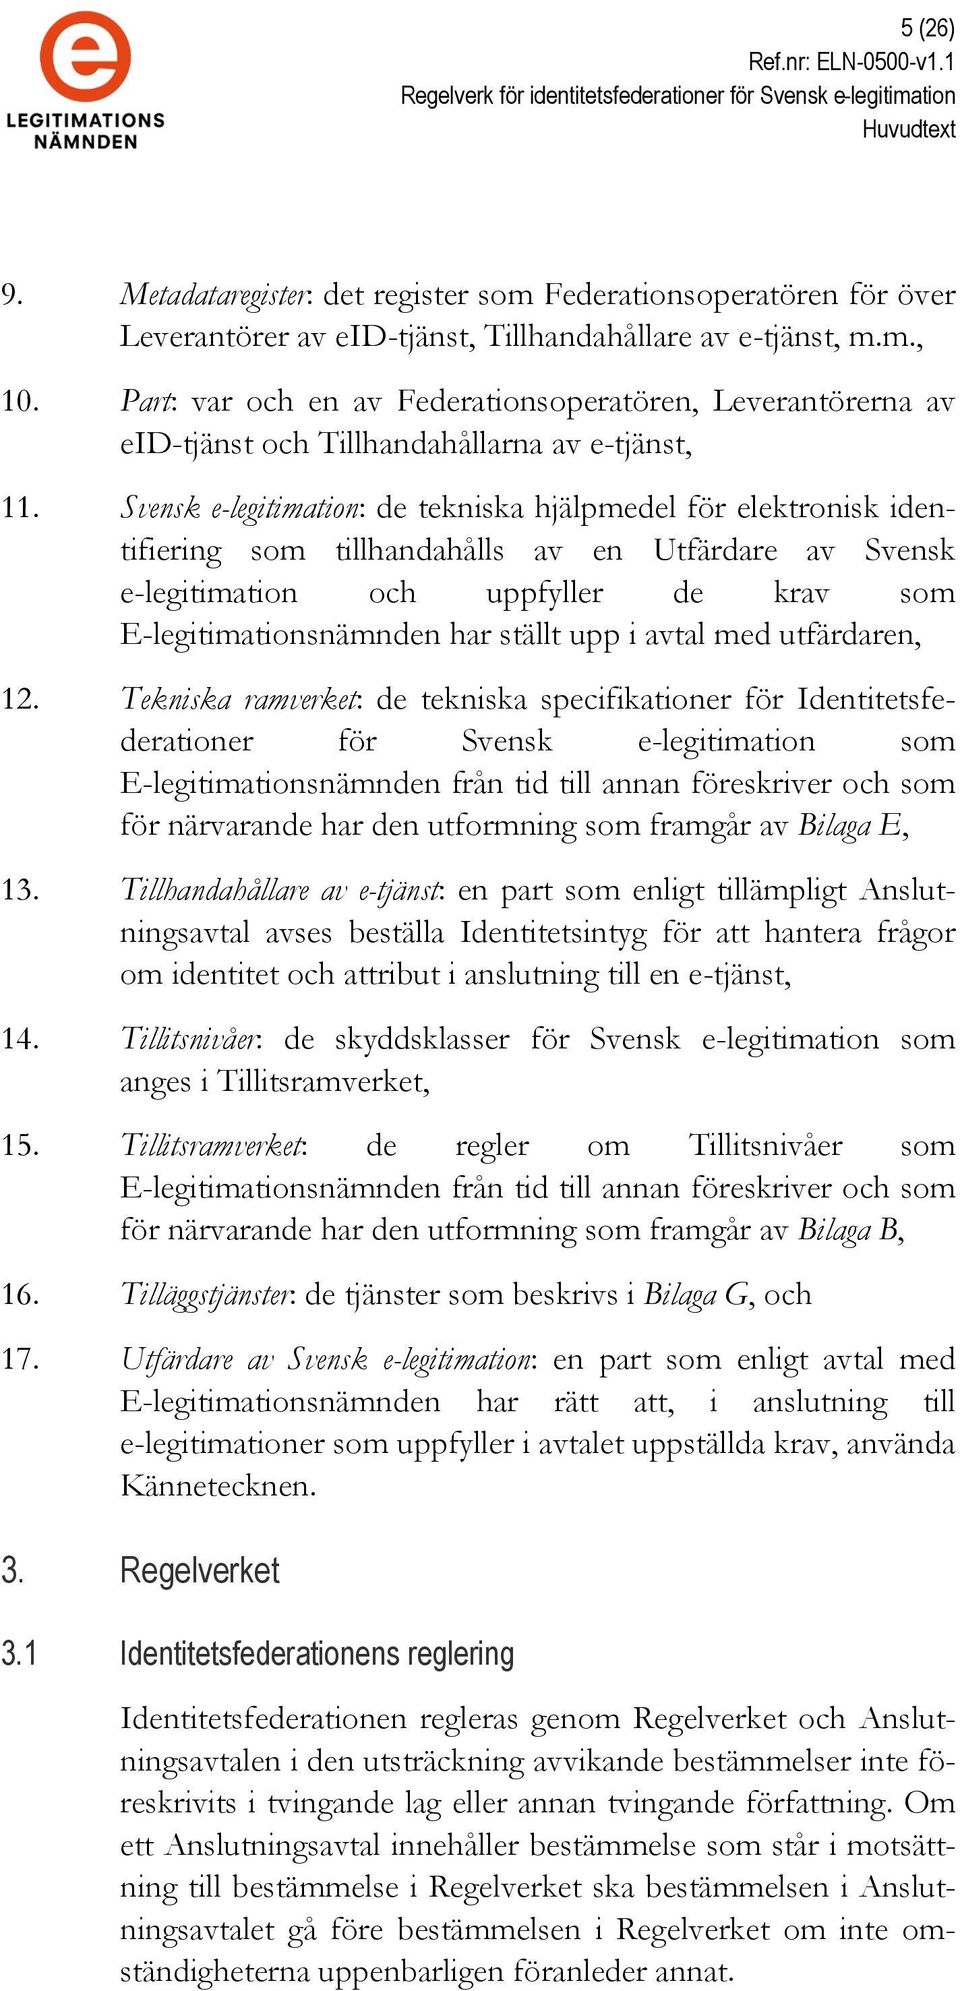 Svensk e-legitimation: de tekniska hjälpmedel för elektronisk identifiering som tillhandahålls av en Utfärdare av Svensk e-legitimation och uppfyller de krav som E-legitimationsnämnden har ställt upp